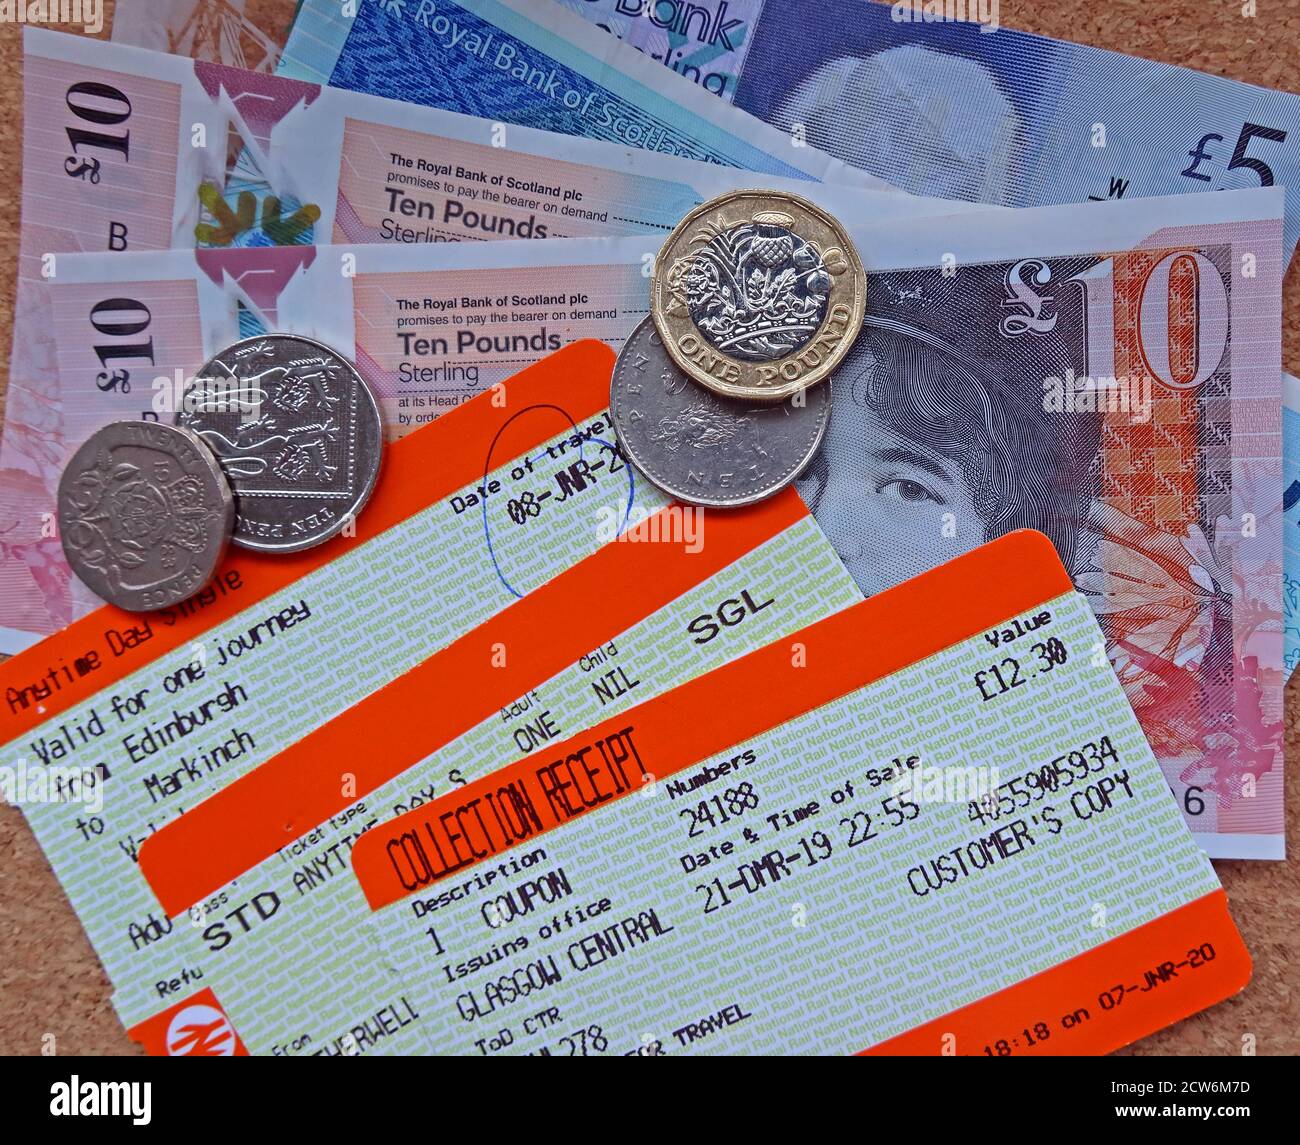 ScotRail Tickets, mit Schottischen Noten und Münzen, steigende Kosten für Zugfahrt und Saisonkarten, Schottland, Großbritannien Stockfoto